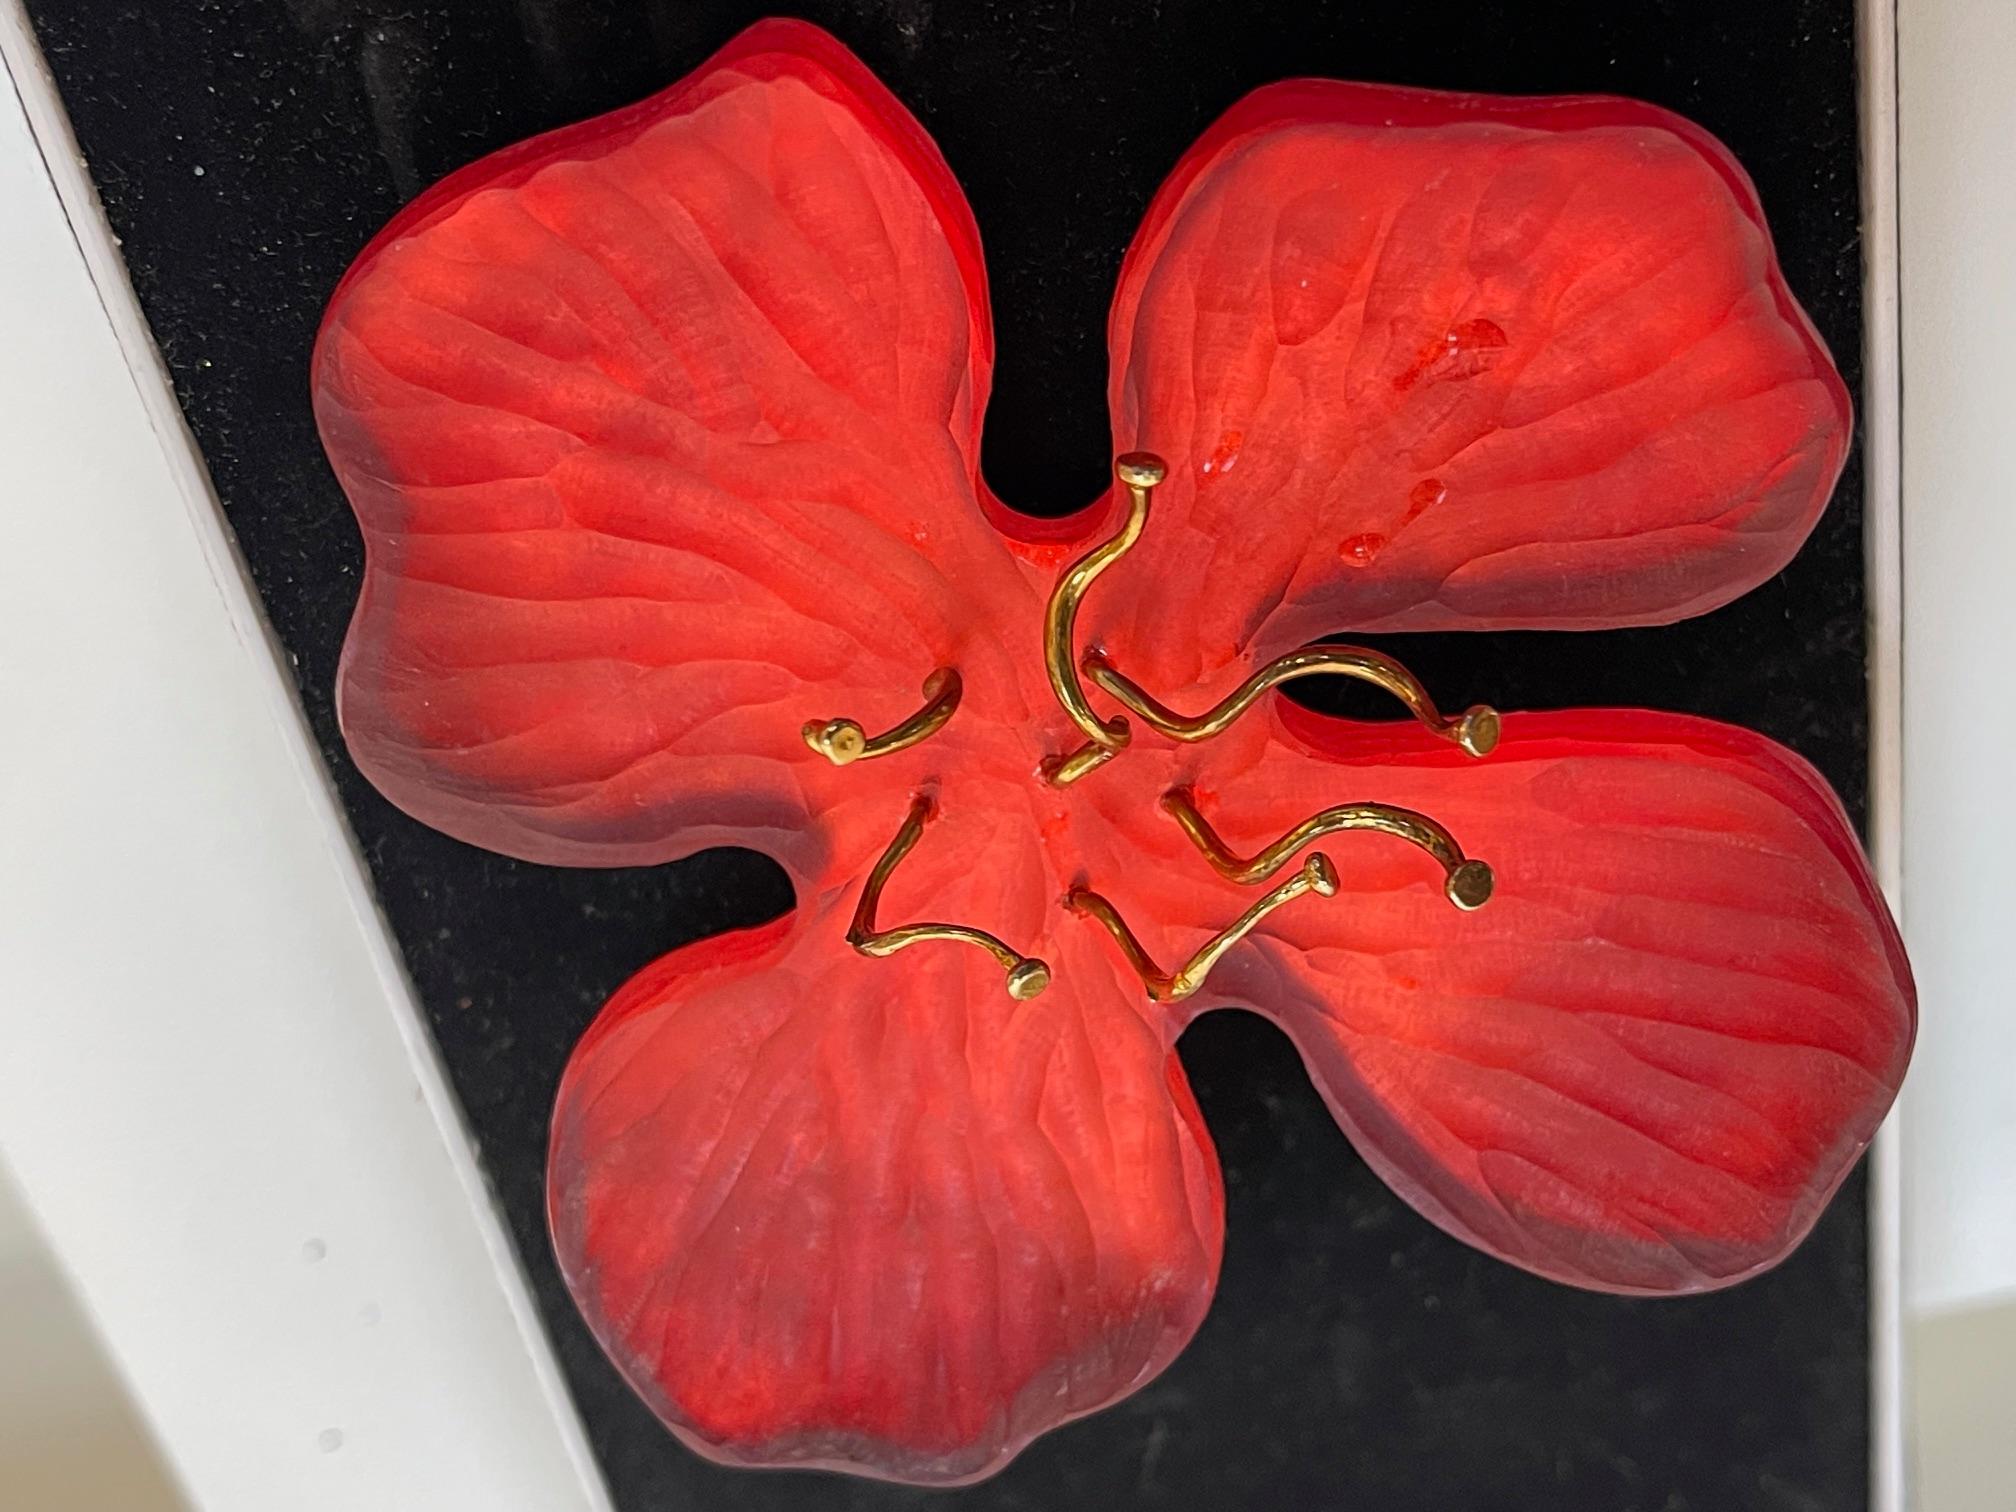 Einfach schön! Oscar Worthy Vintage Handgefertigt Alexis Bittar Designer signiert große rote Orange Blume Zentrierung vergoldet Staubgefäße. Markiert auf der Rückseite: HANDGEFERTIGT VON ALEXIS BITTAR. Pin misst ca. 3,25